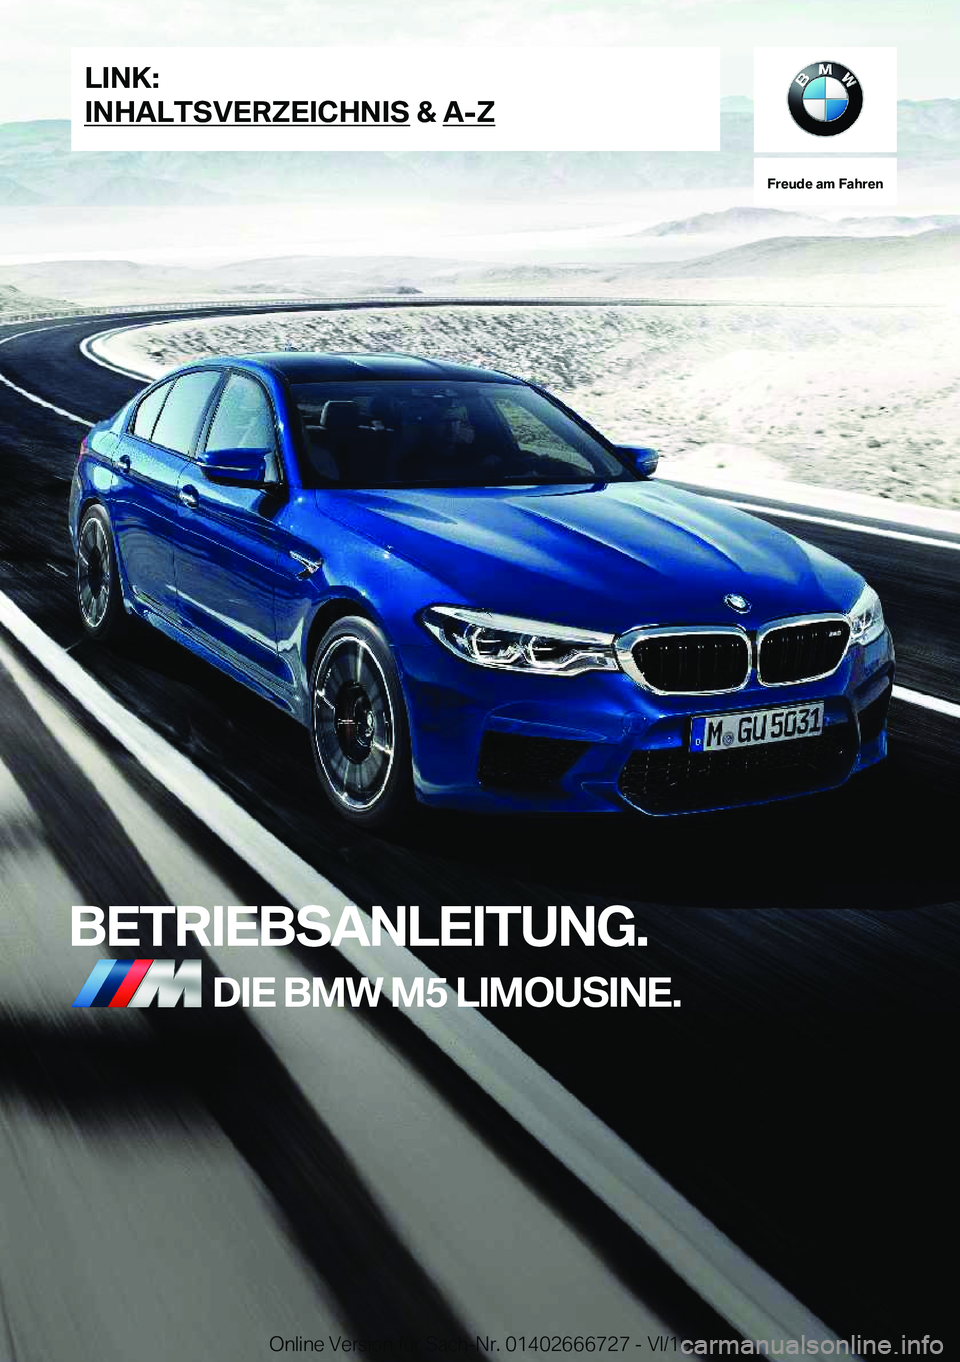 BMW M5 2020  Betriebsanleitungen (in German) �F�r�e�u�d�e��a�m��F�a�h�r�e�n
�B�E�T�R�I�E�B�S�A�N�L�E�I�T�U�N�G�.�D�I�E��B�M�W��M�5��L�I�M�O�U�S�I�N�E�.�L�I�N�K�:
�I�N�H�A�L�T�S�V�E�R�Z�E�I�C�H�N�I�S��&��A�-�Z�O�n�l�i�n�e��V�e�r�s�i�o�n�